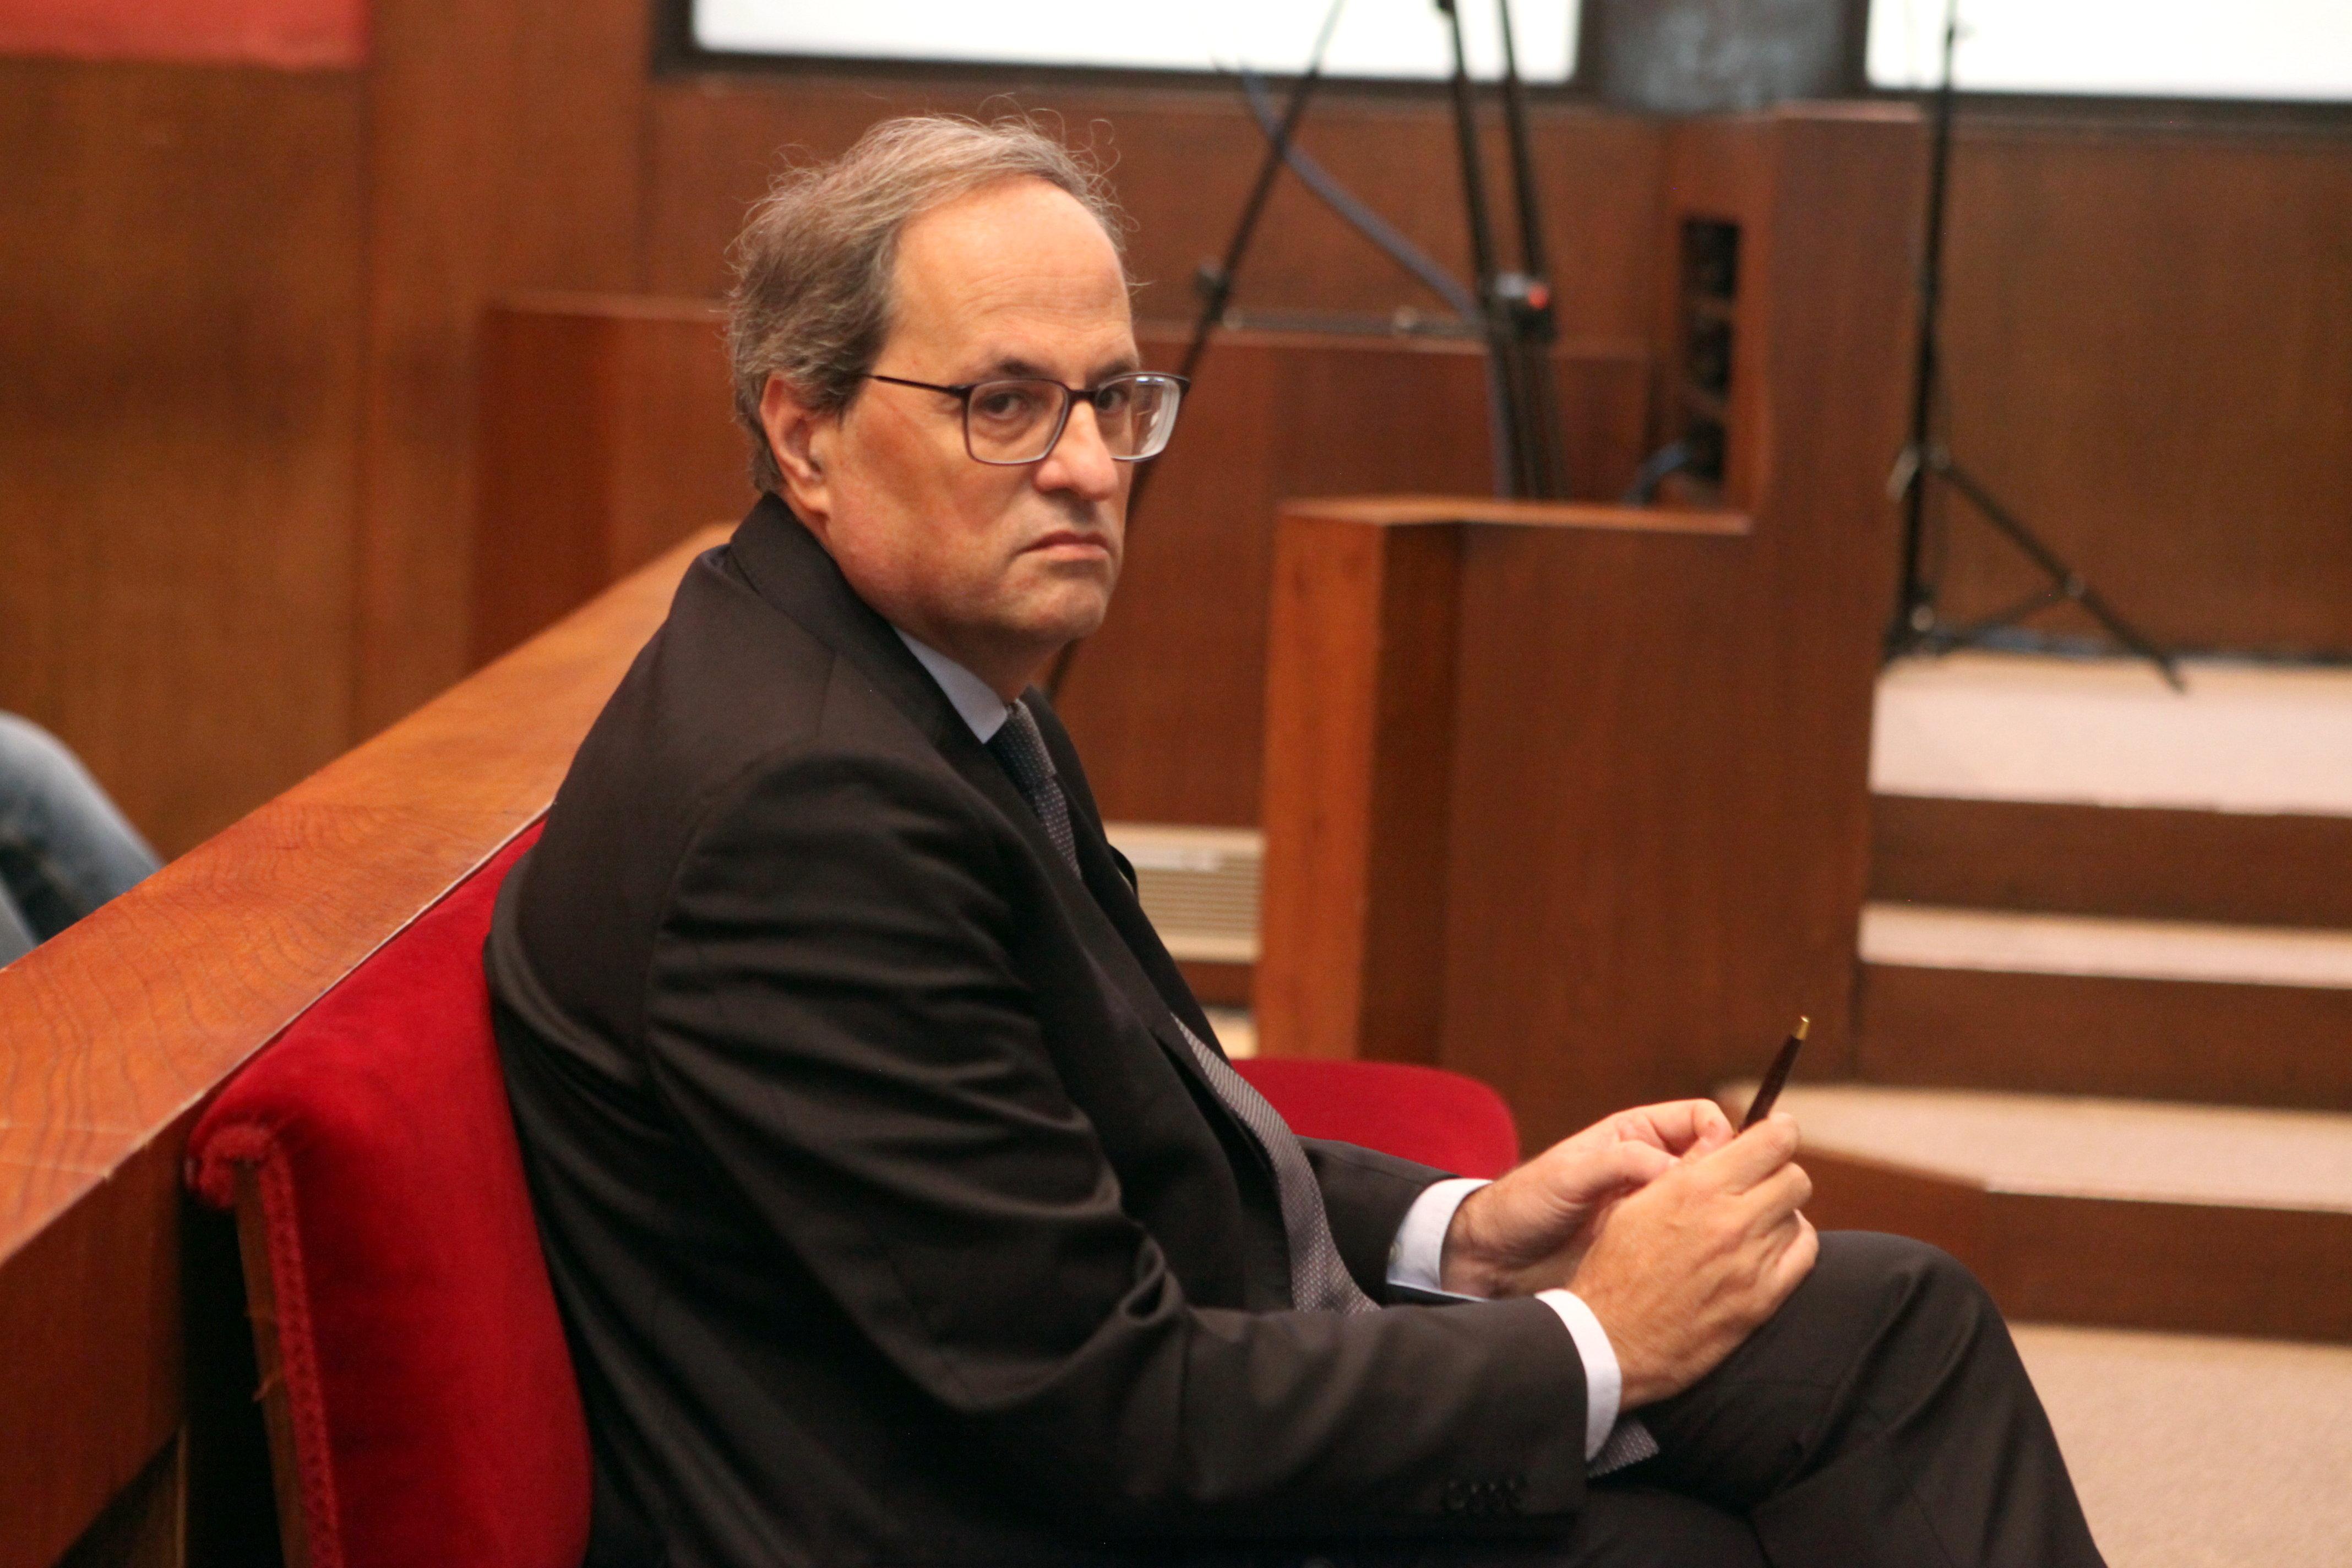 El president de la Generalitat Quim Torra en el banquillo del Tribunal Superior de Justicia de Cataluña 